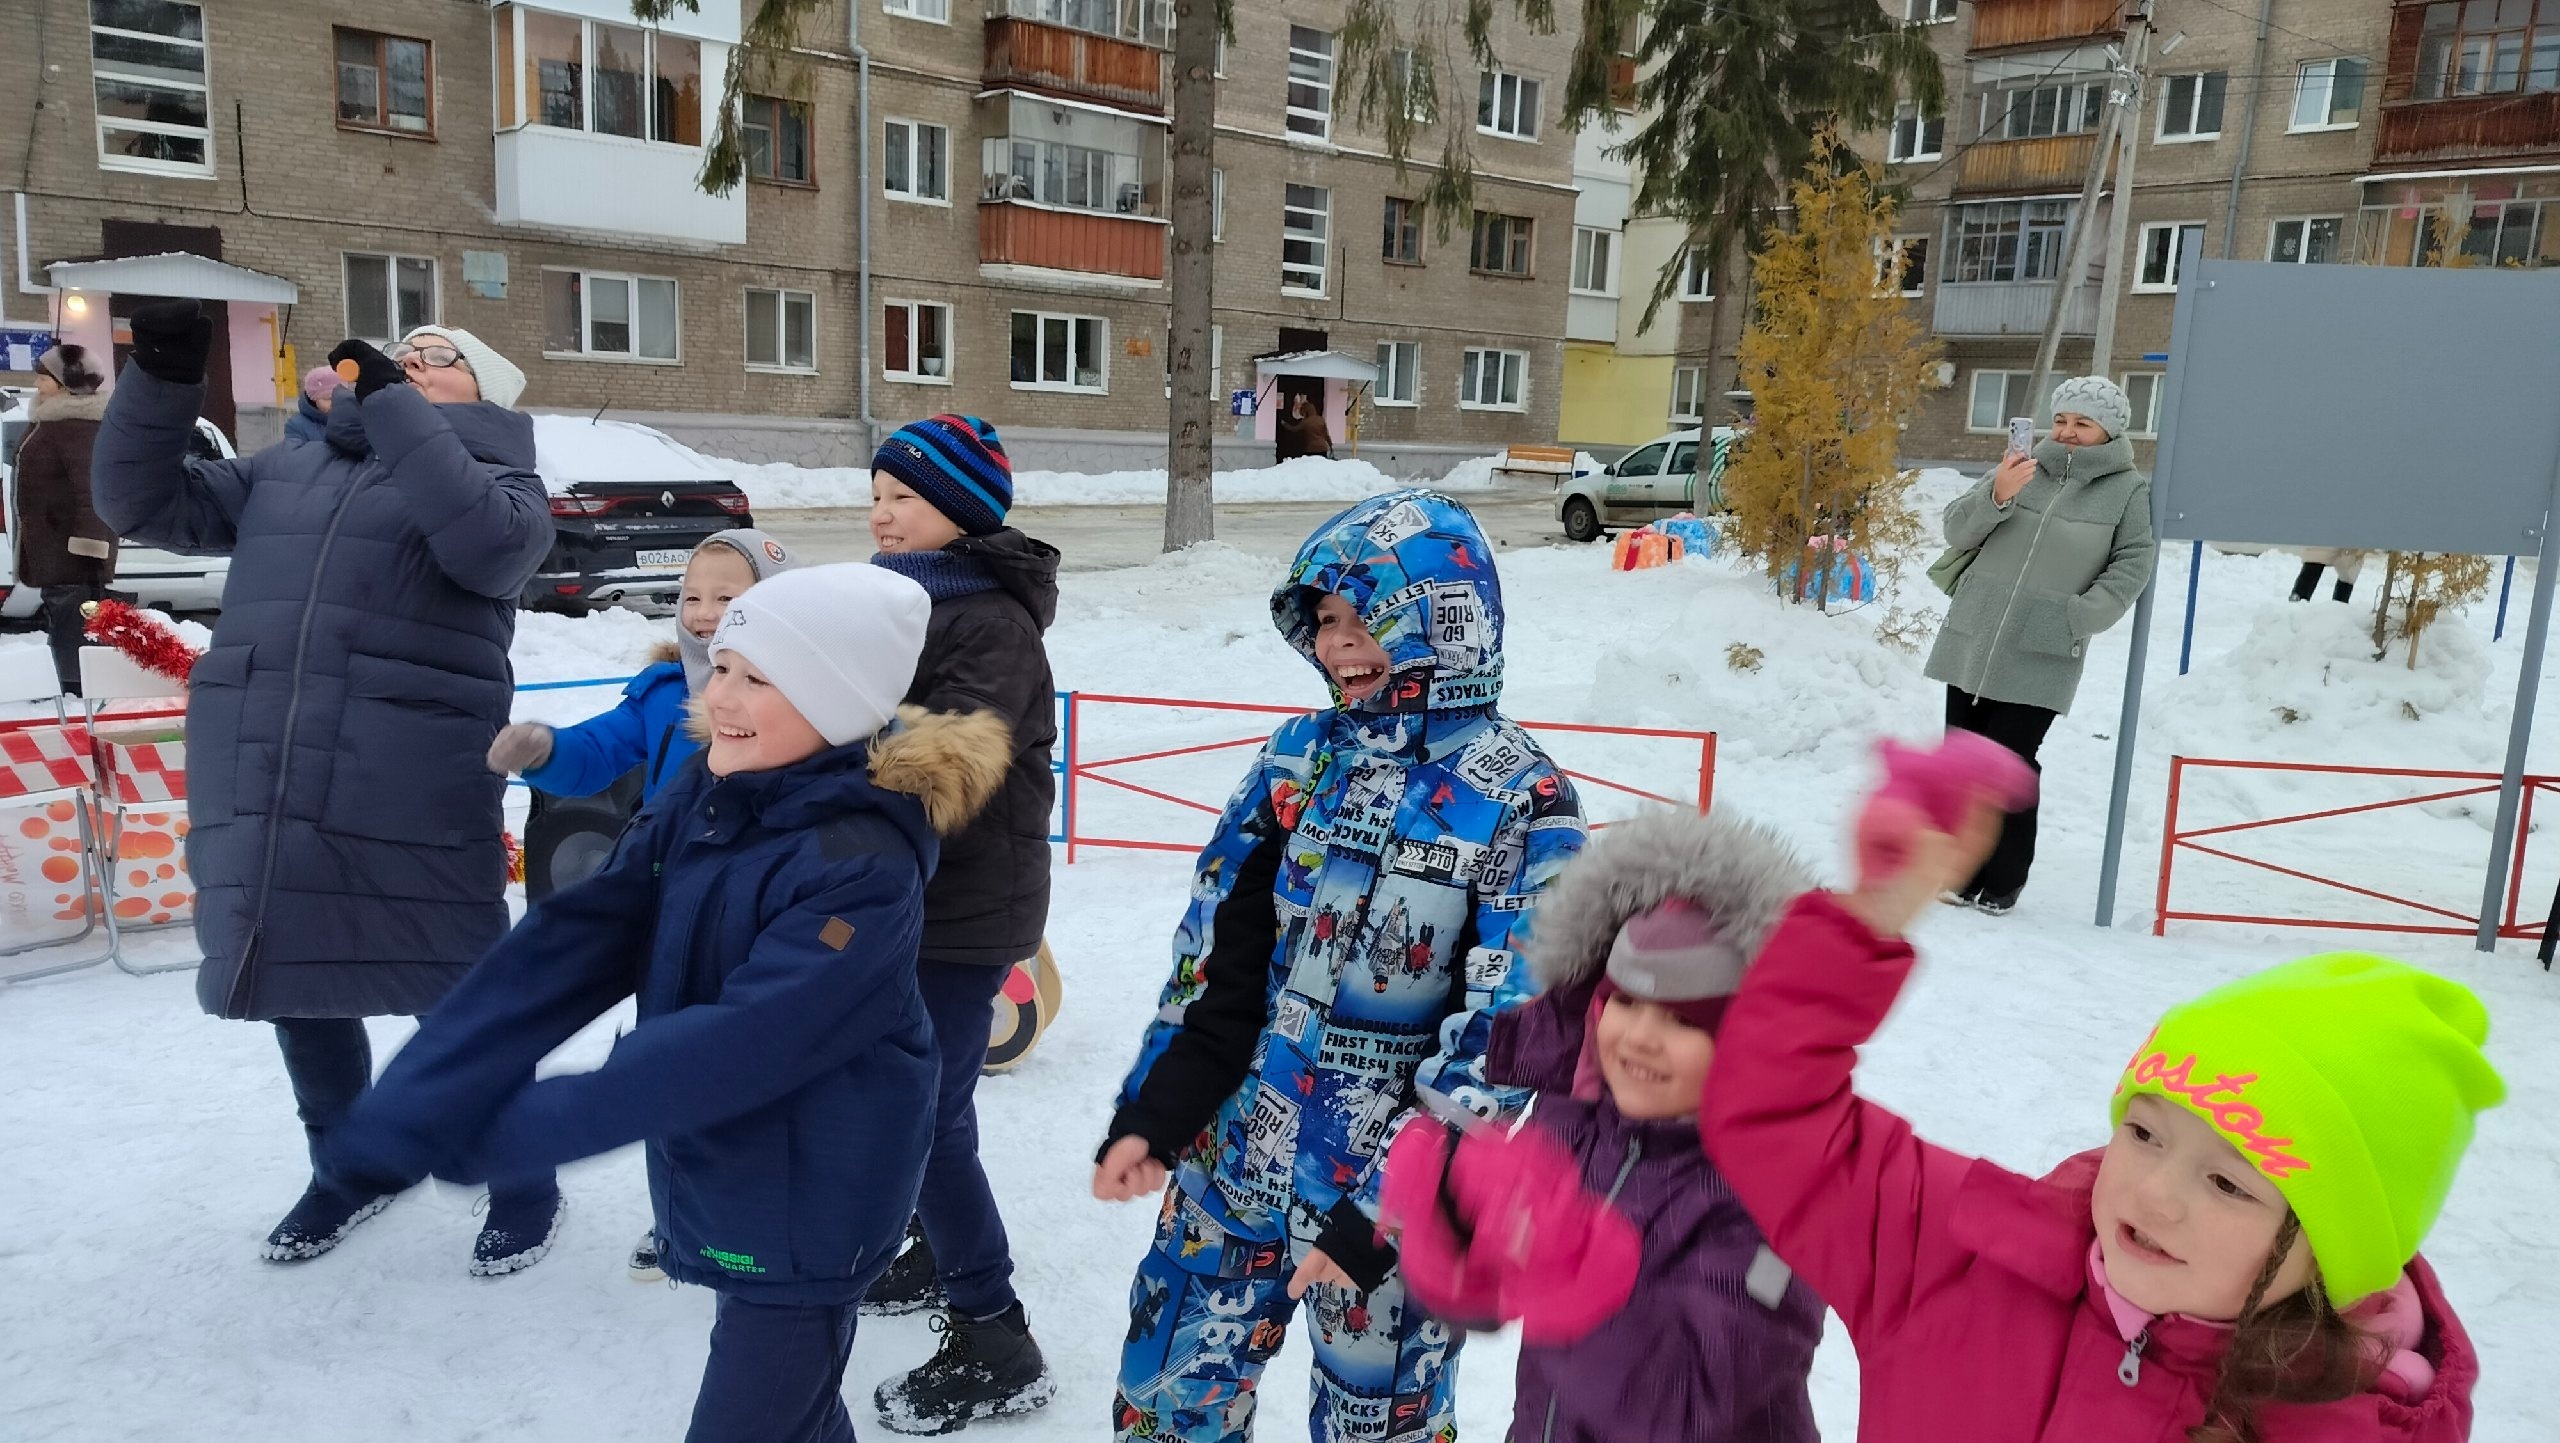 26 декабря педагоги Молодёжного центра "Вираж" провели Новогодний праздник в "Башкирском дворике", расположенном на улице Ульяновых, дом 48